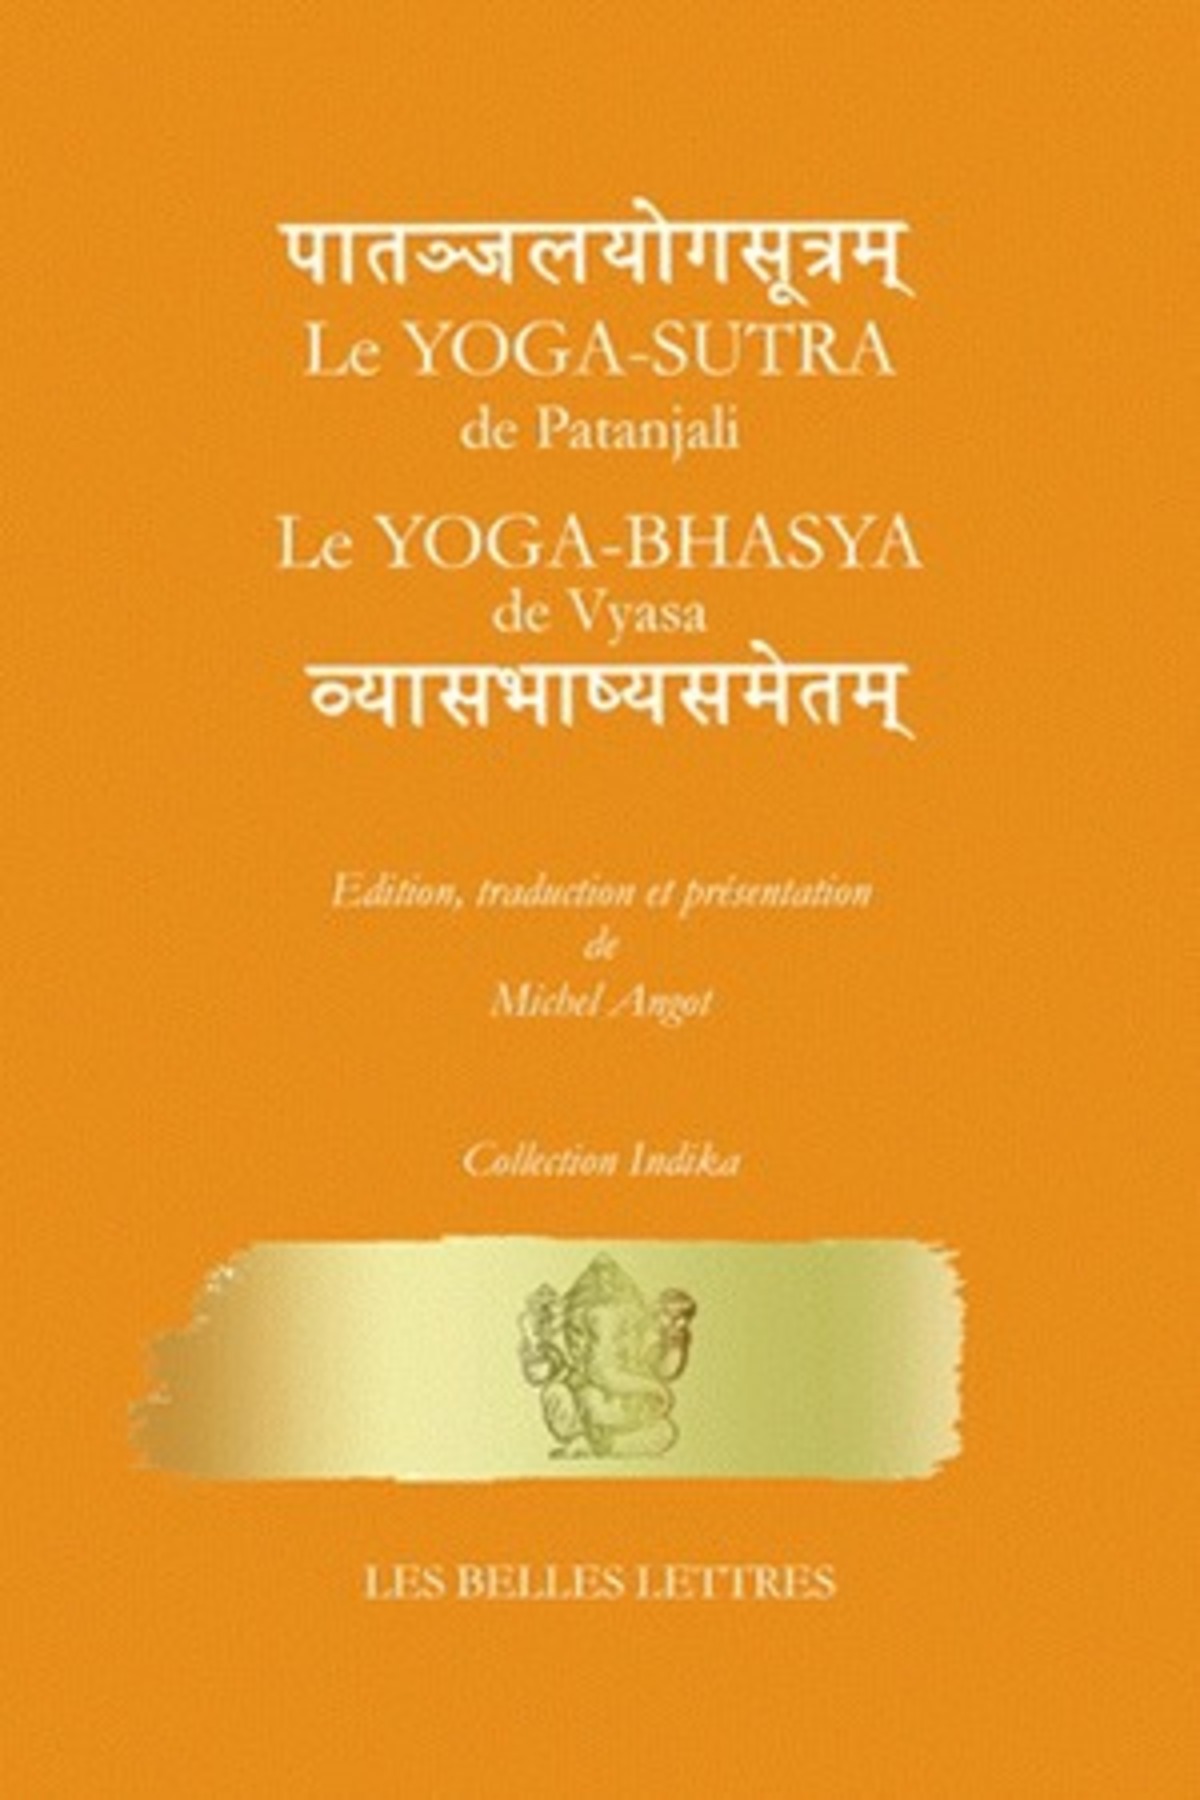 Le Yoga-Sῡtra de Patañjali suivi du Yoga-Bhāṣya de Vyāsa